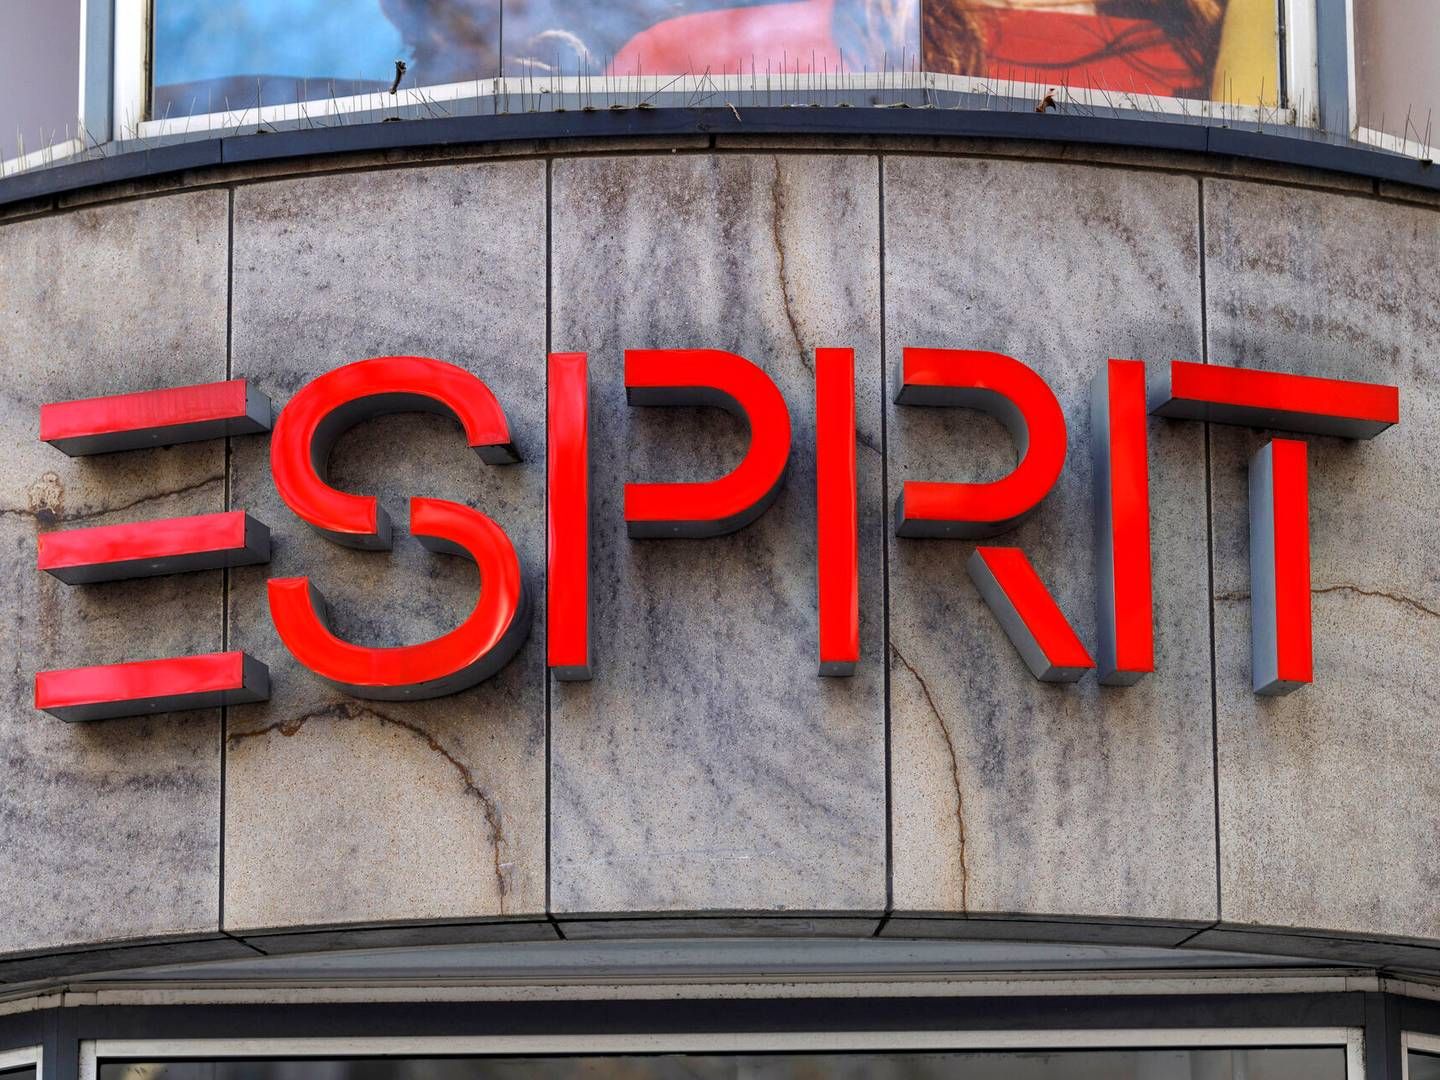 Esprit er i Danmark til stede med en webshop og en butik i stormagasinet Illum. | Photo: Christoph Hardt/AP/Ritzau Scanpix